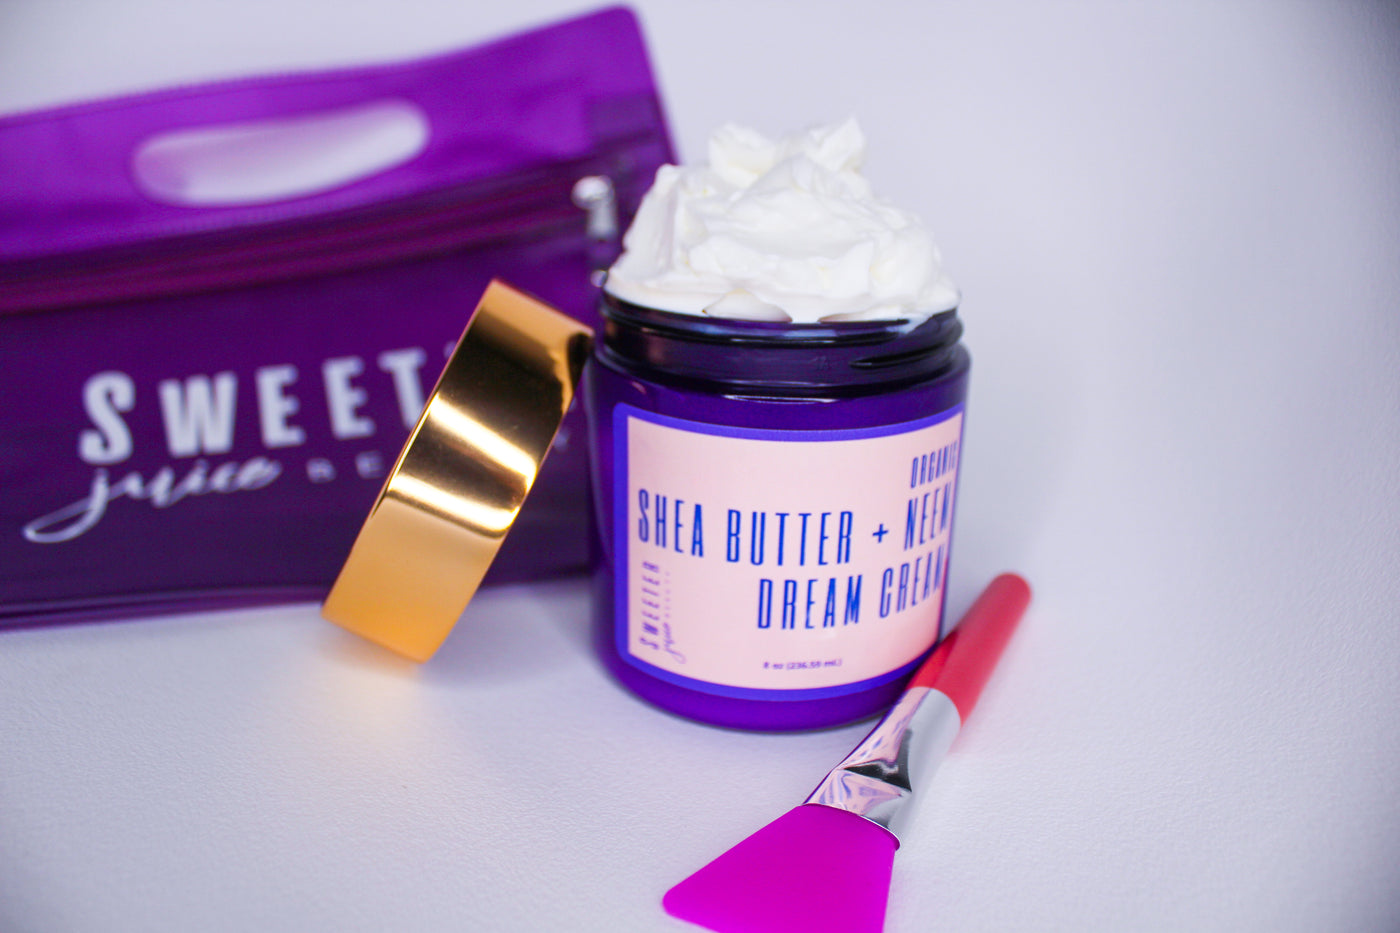 Shea Butter + Neem Dream Cream - Sweeter Juice Beauty